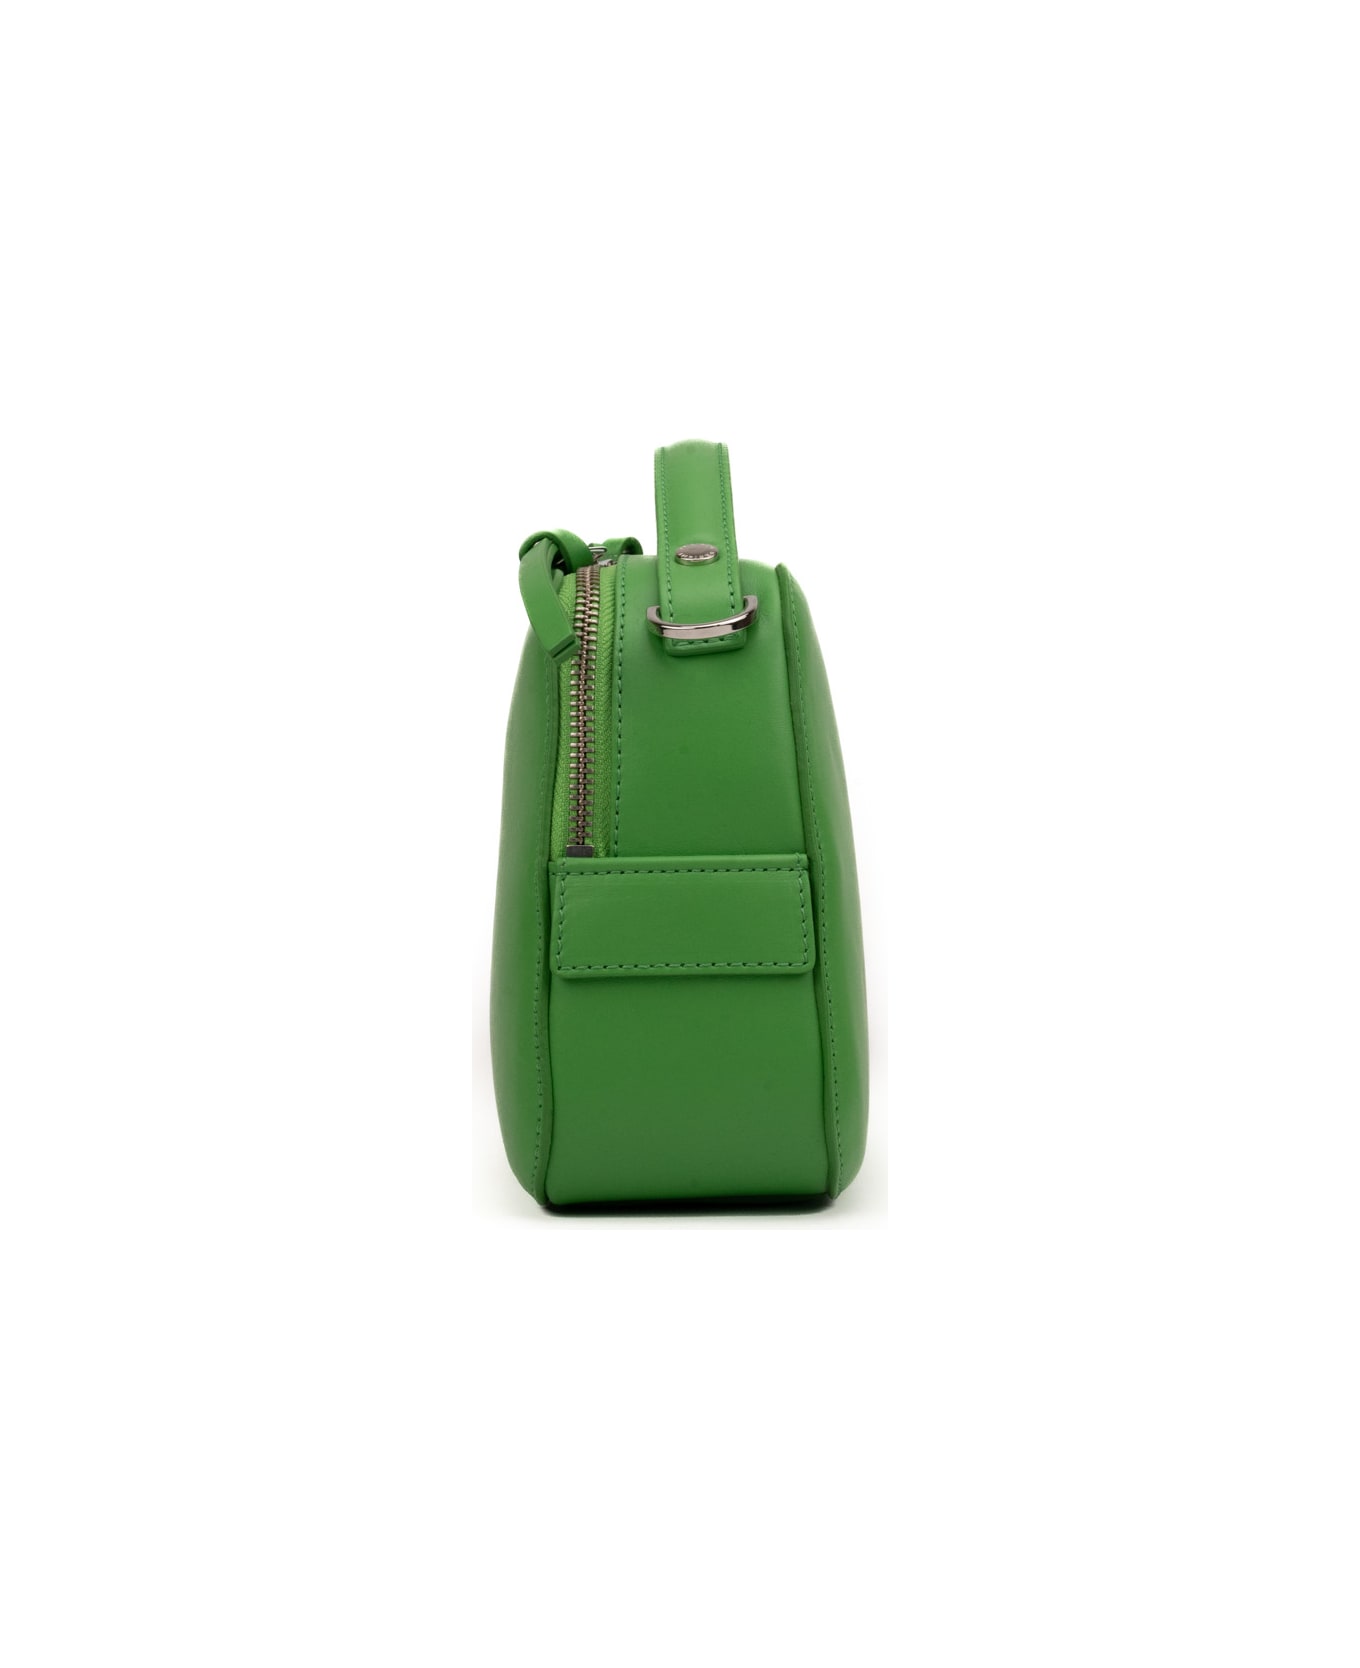 Orciani Mini Cheri Vanity Bag In Leather - Verde